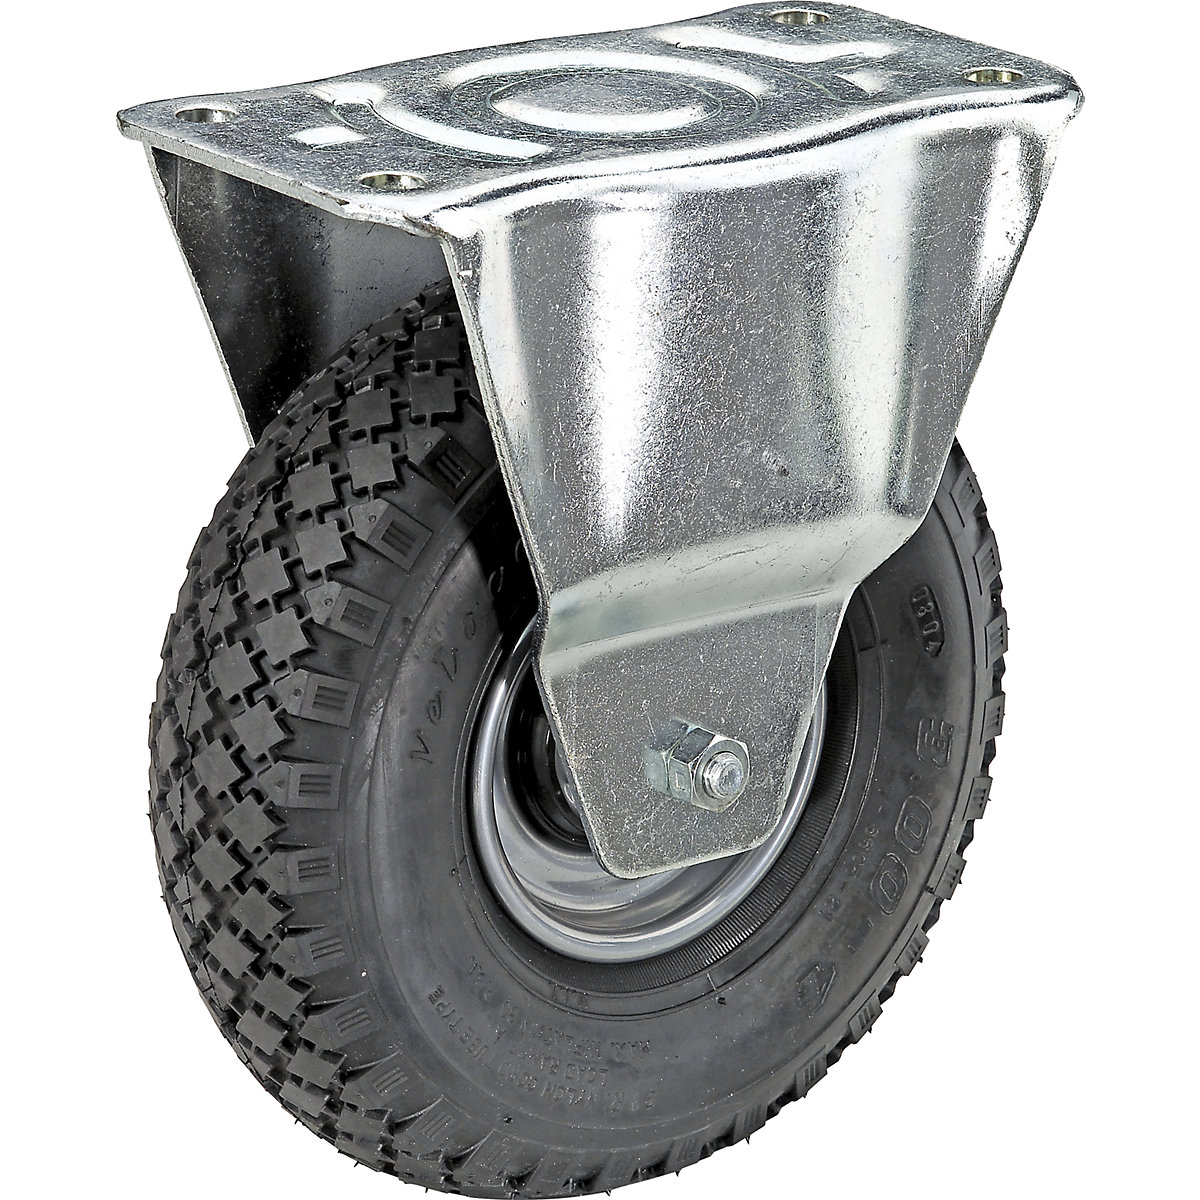 Luftreifen auf Stahlblech-Felge, Rad-Ø x Breite 260 x 85 mm, Reifenprofil Block, Bockrolle, mit Rollenlager-5